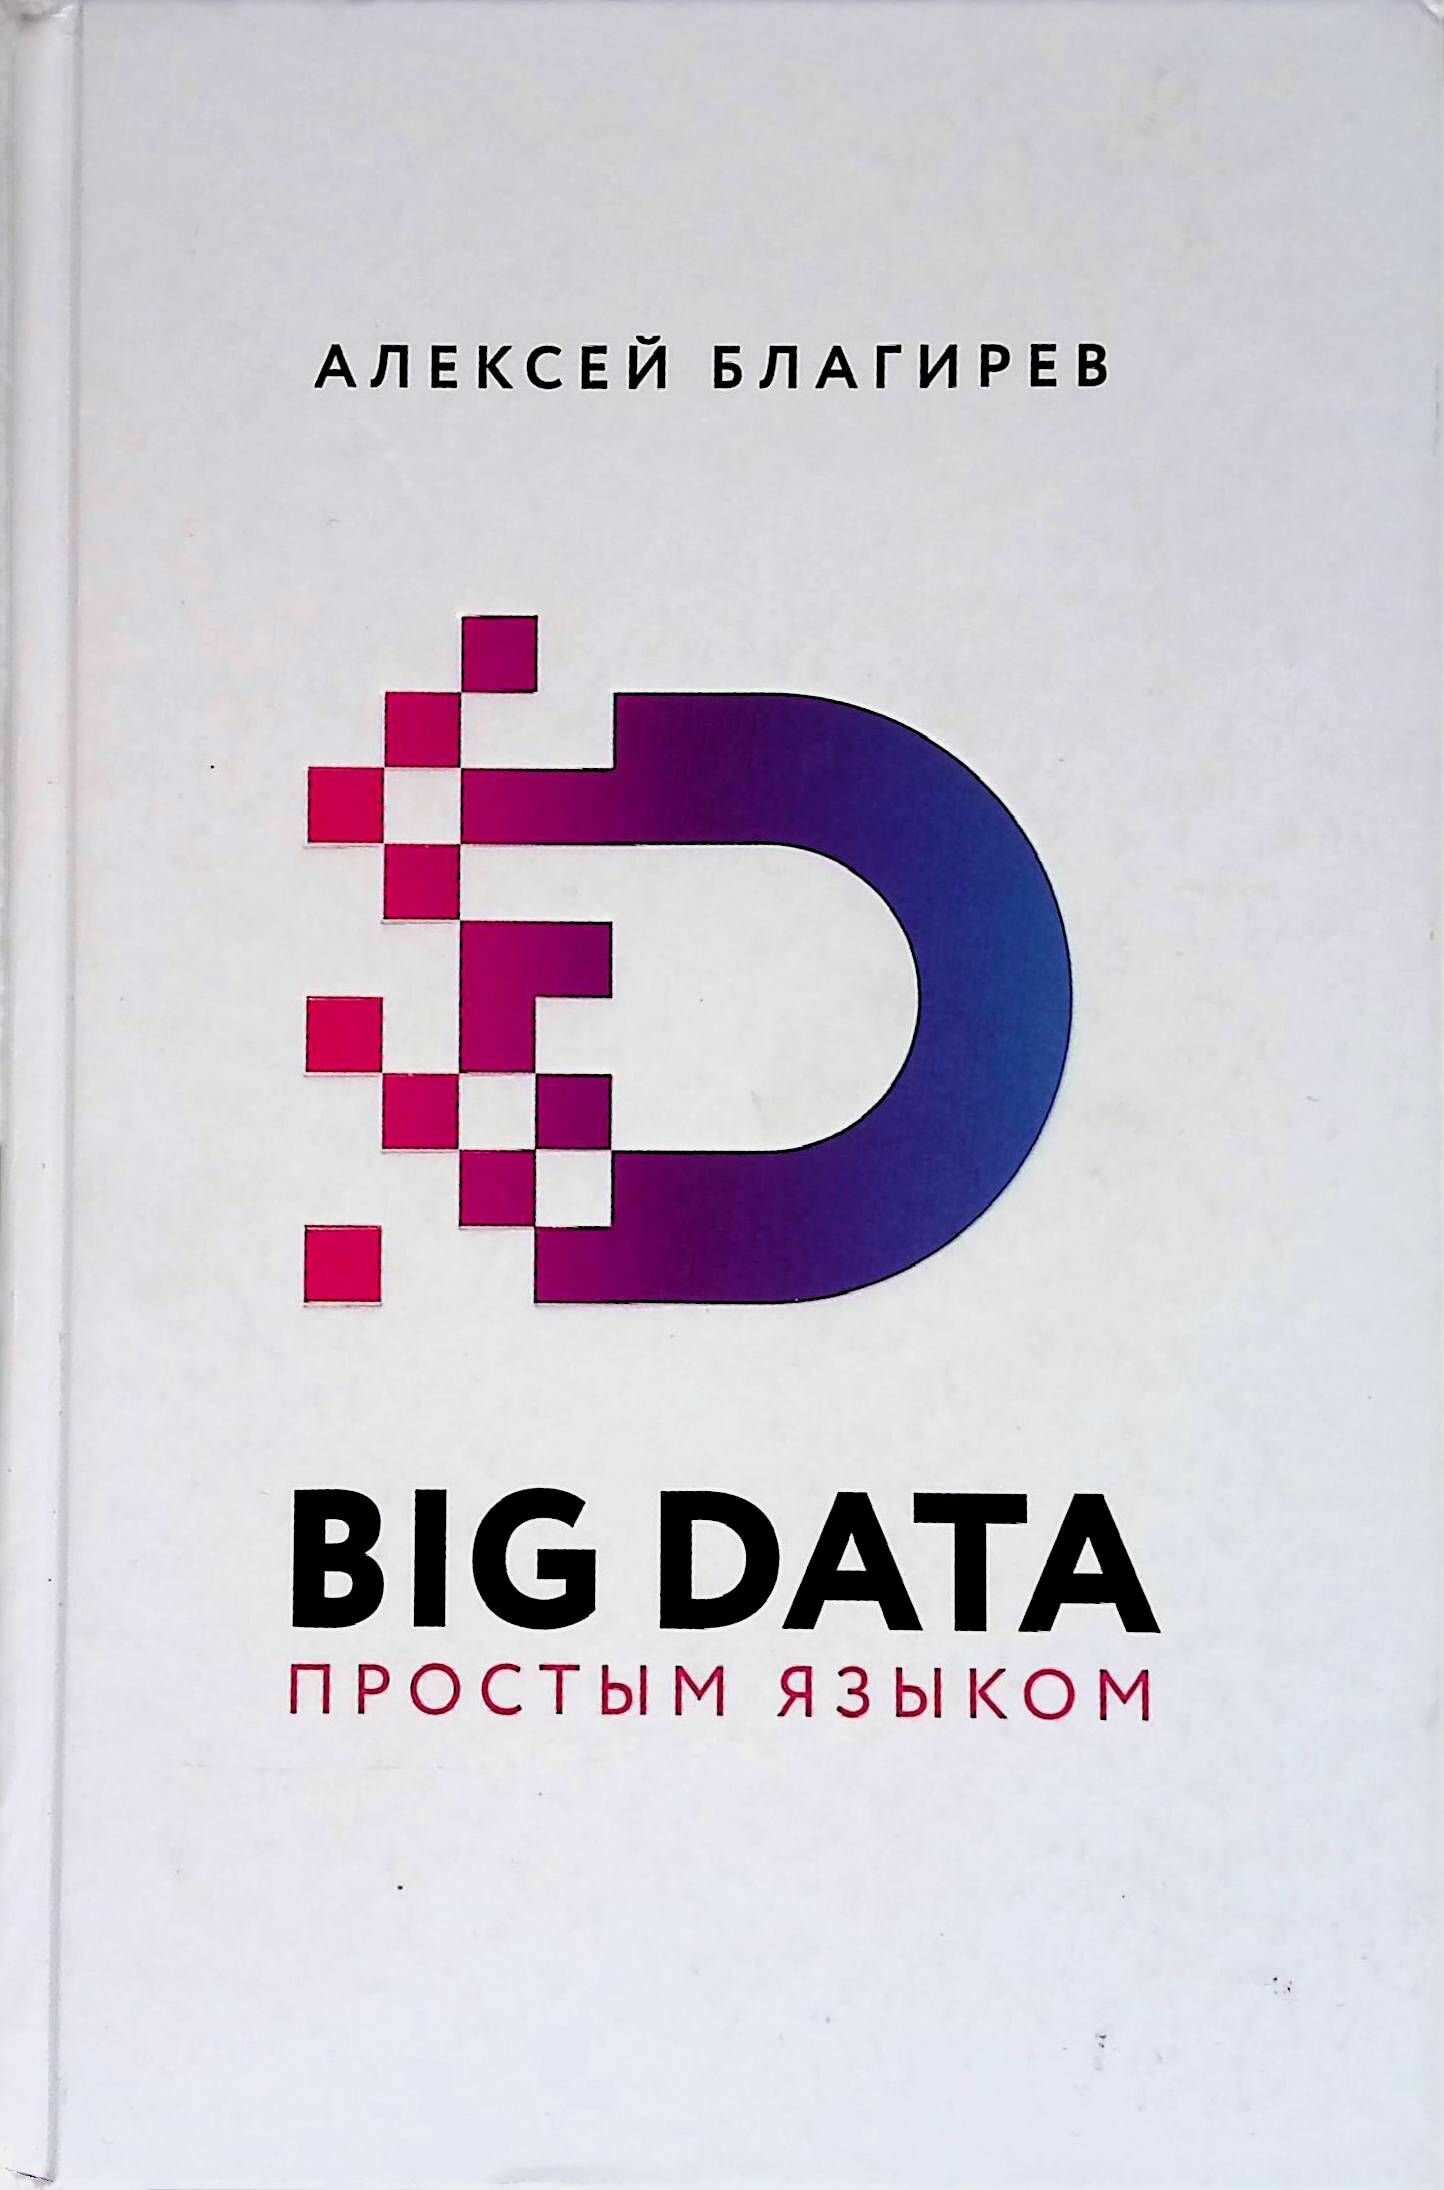 Big Data простым языком (Благирев Алексей, Хапаева Наталья (соавтор)) - фото №6